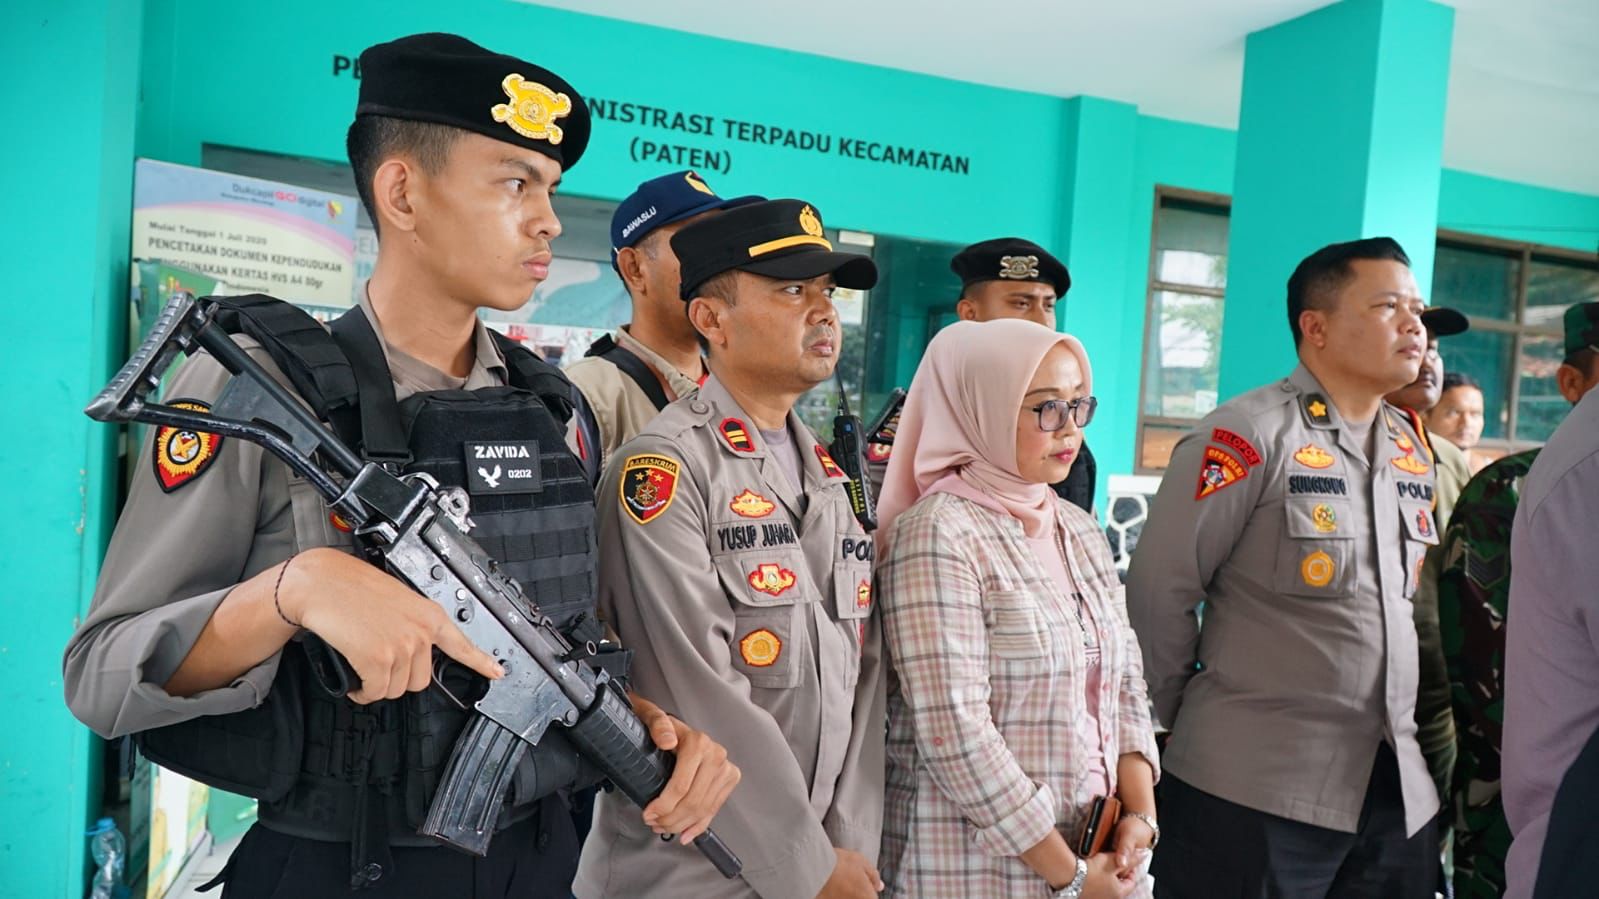 Polresta Bandung Kawal Ketat Pengiriman Surat Suara dari TPS ke PPK Dengan Siapkan Personil Bersenjata. Foto Dok Humas Polresta Bandung